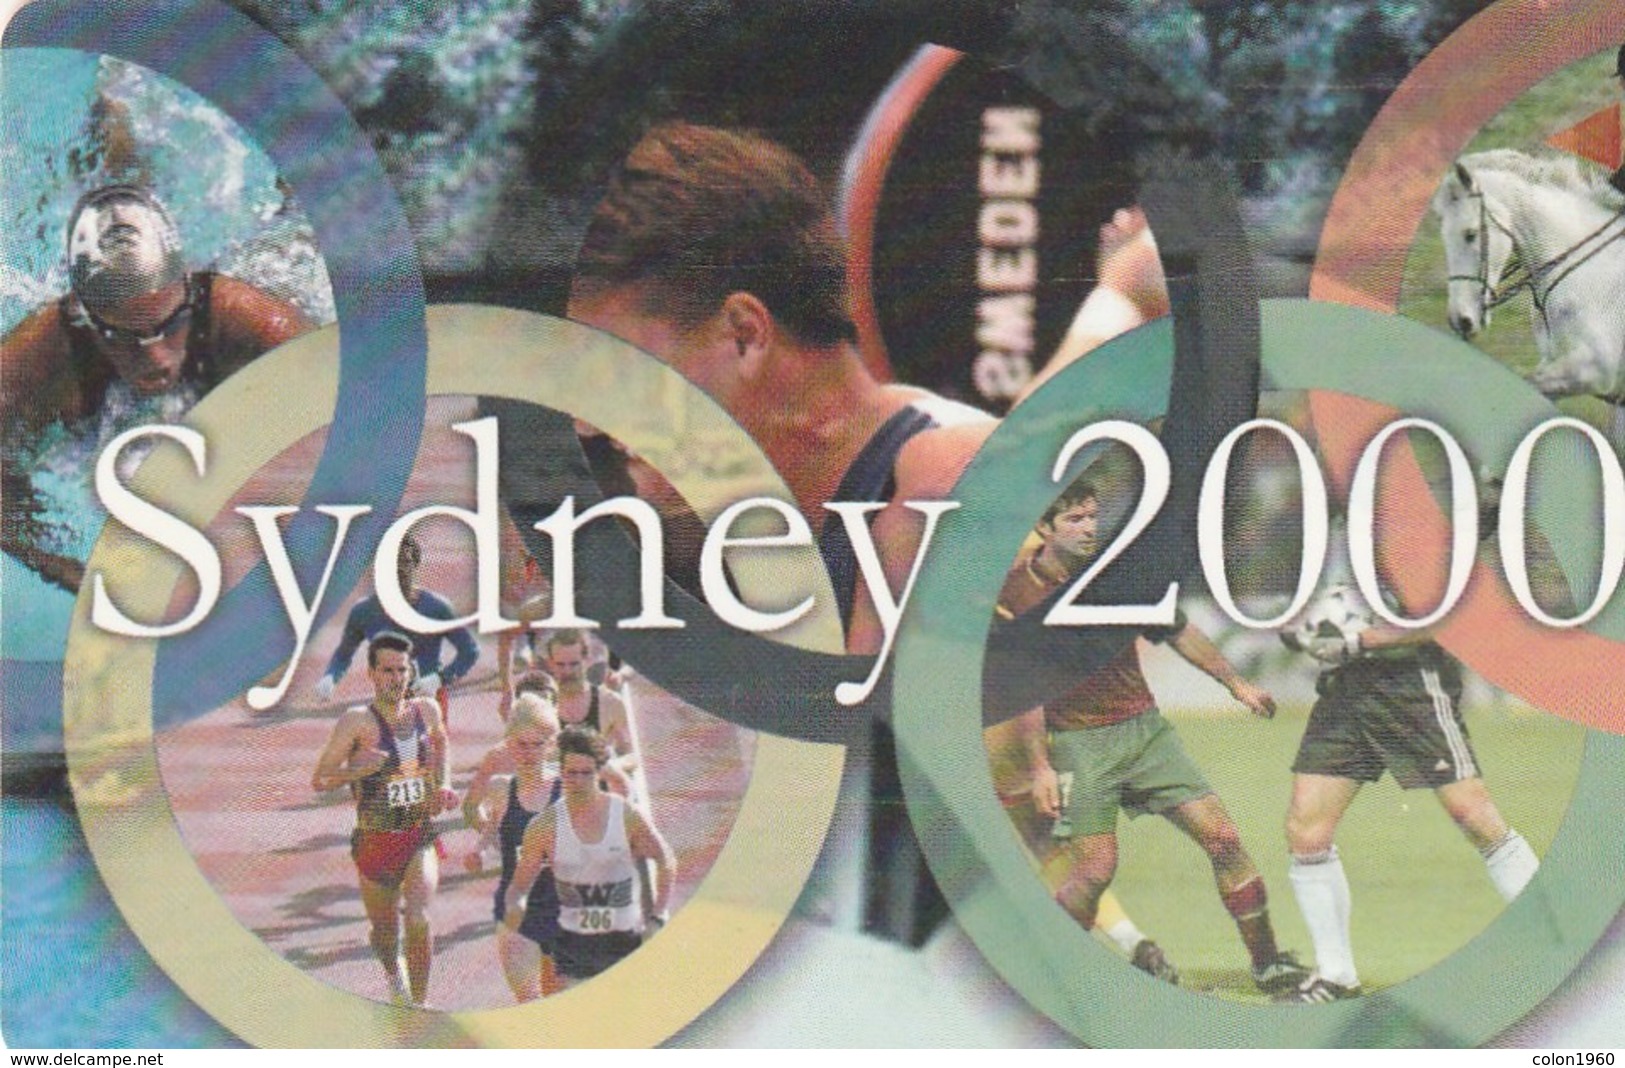 TARJETA TELEFONICA DE RUMANIA (Juegos Olímpicos). Sydney 2000 (Red). RO-ROM-0067A (277) - Juegos Olímpicos